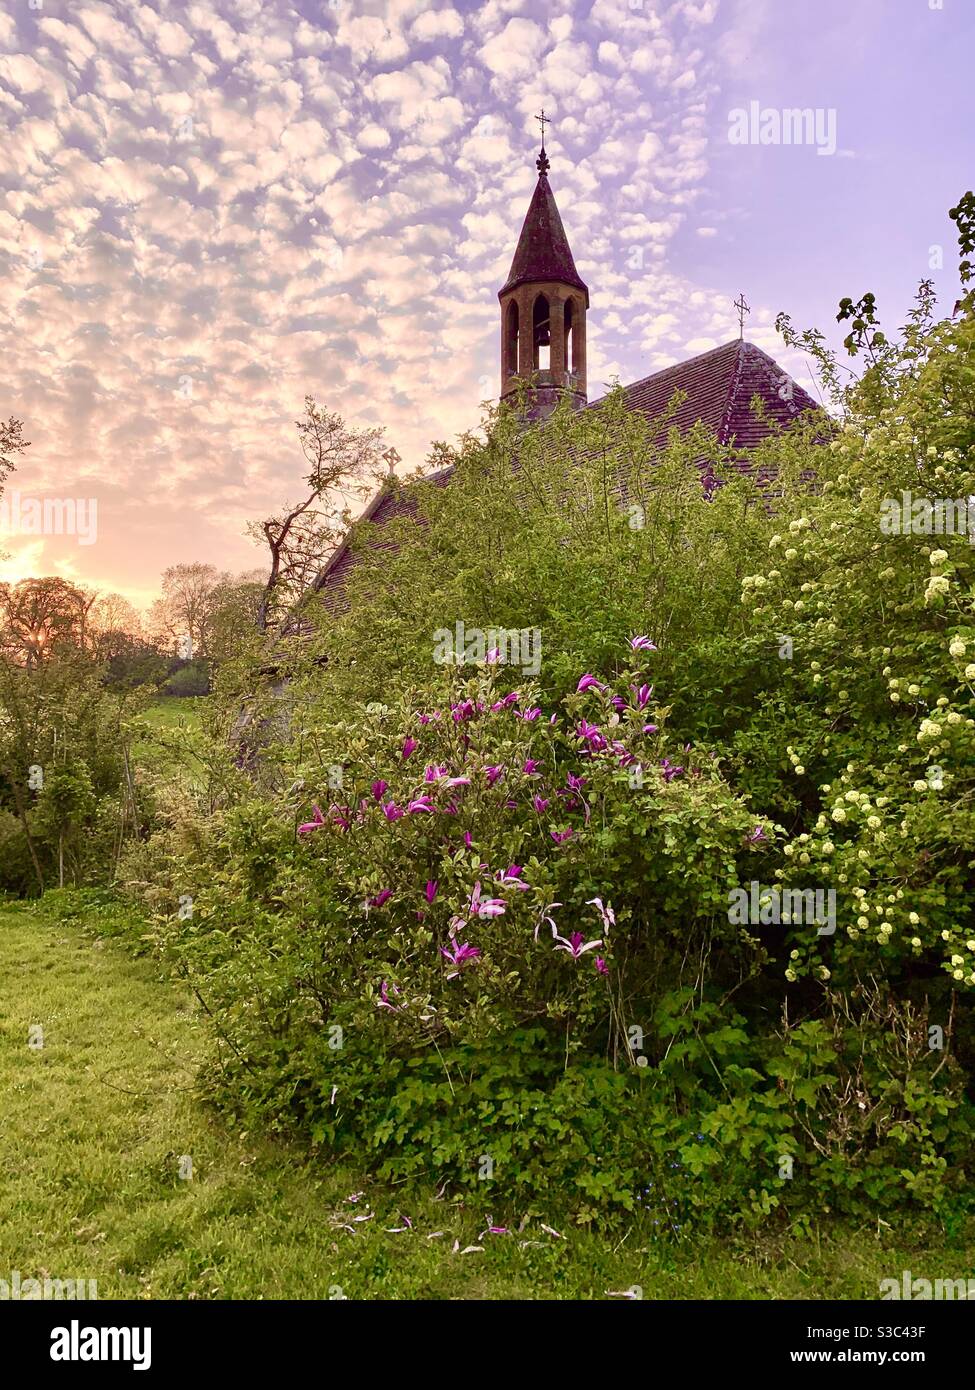 Petite église gothique victorienne anglaise avec jardin de chalet surcultivé au coucher du soleil Somerset, Angleterre, mai 2020 Banque D'Images